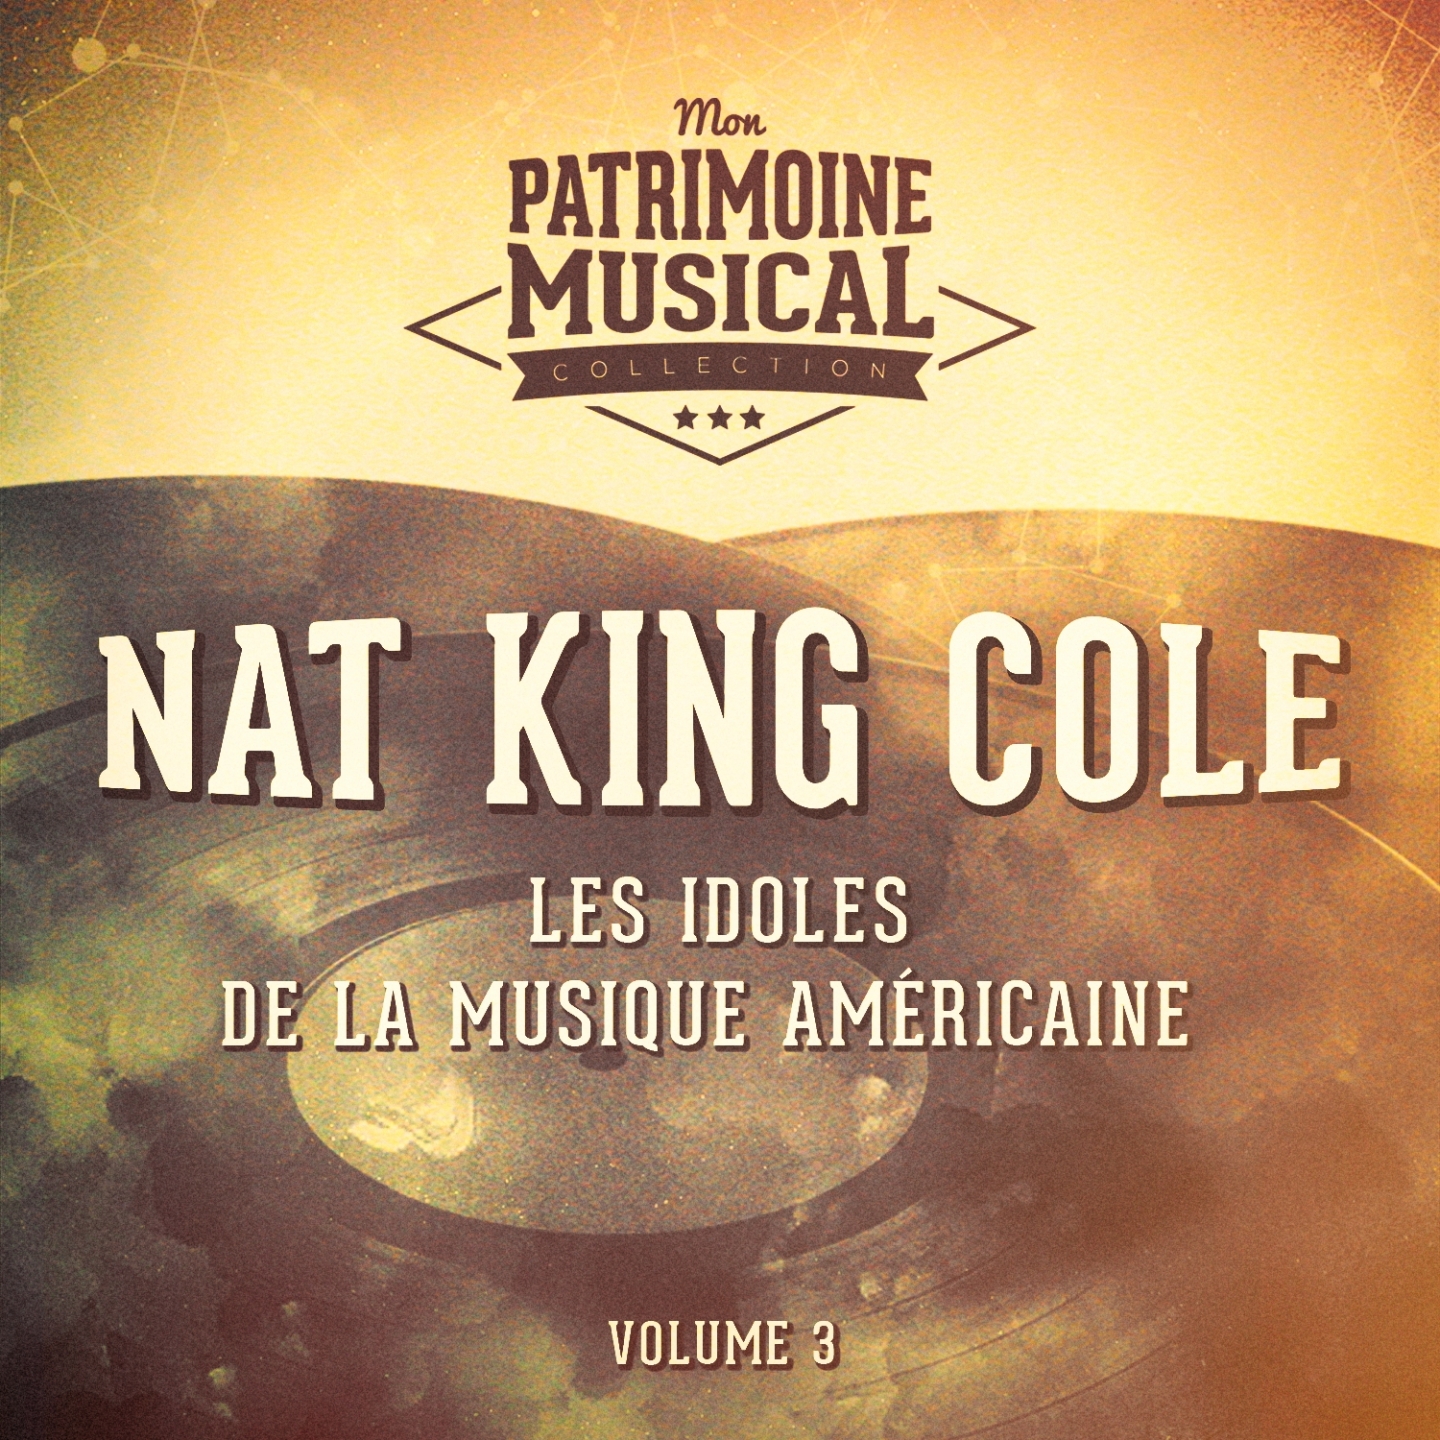 Les idoles de la musique ame ricaine : Nat King Cole, Vol. 3